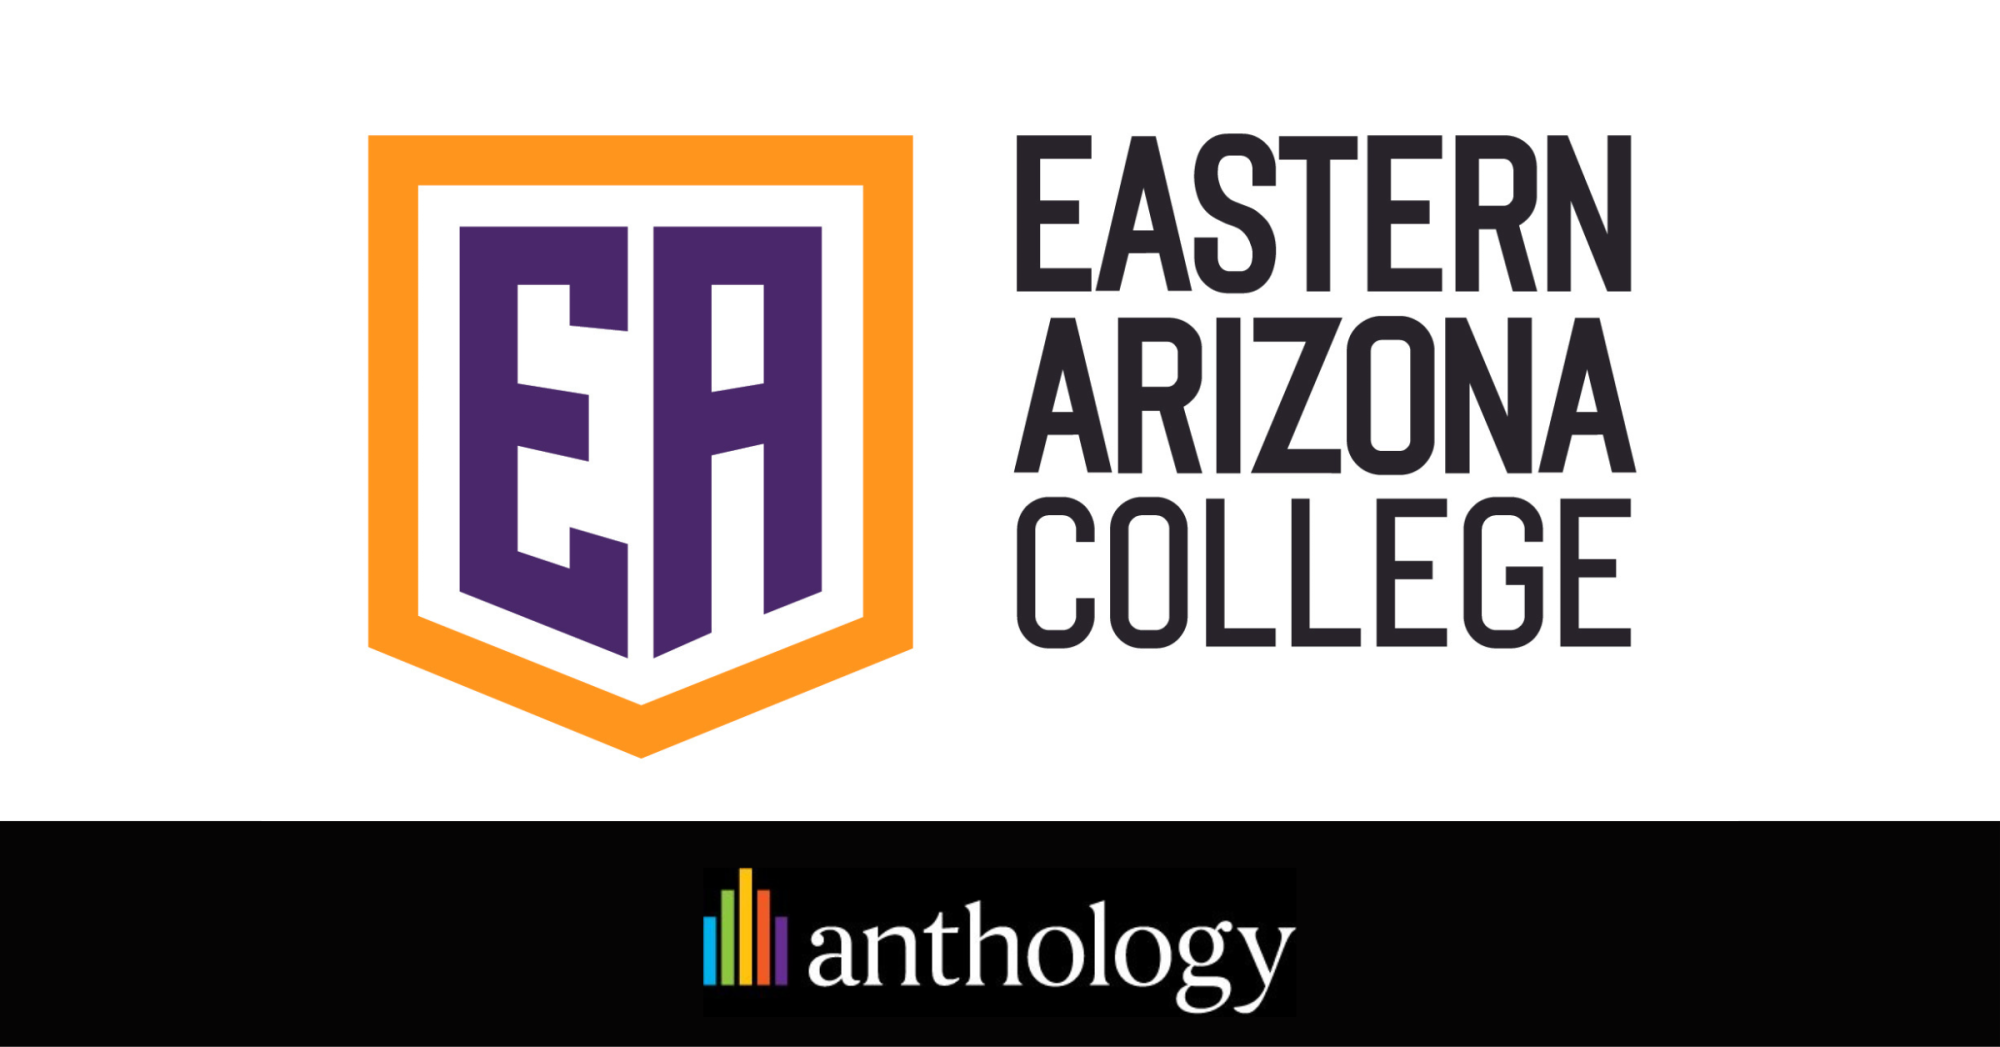 Eastern Arizona College logo lockup with the Anthology logo